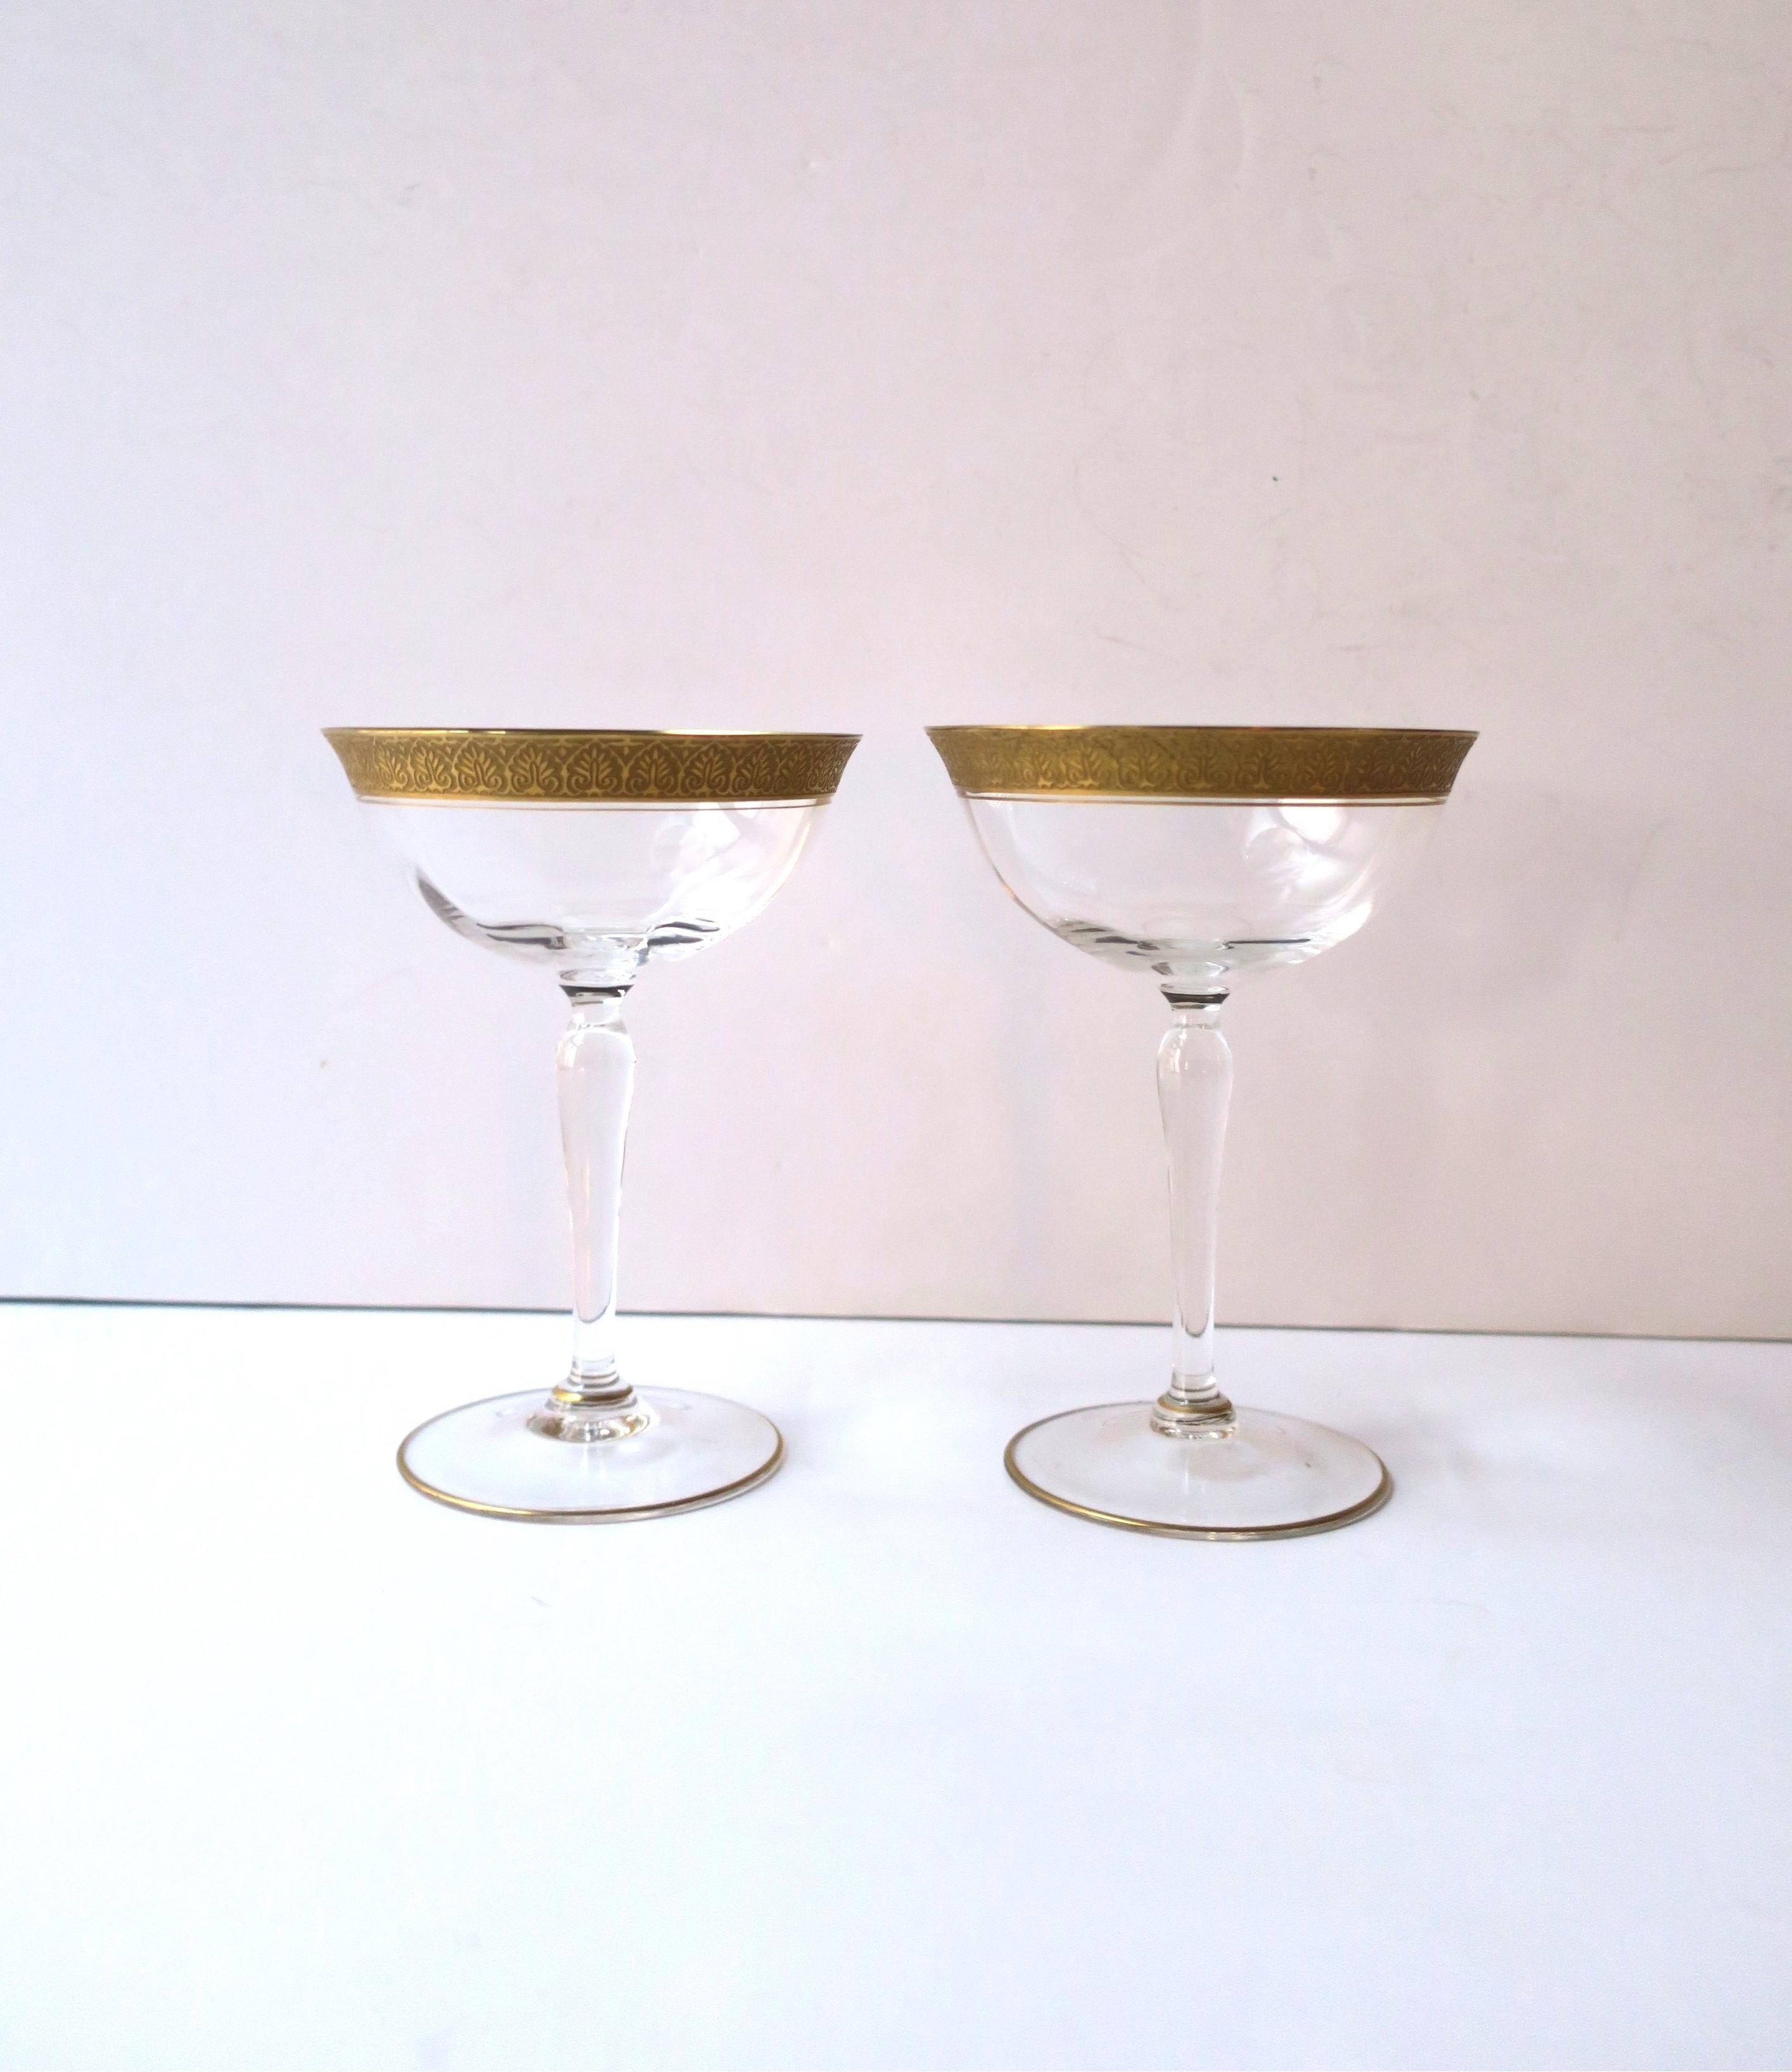 Ein wunderschönes Paar Champagner- oder Cocktailgläser mit 22-karätigem Goldrand, circa Anfang des 20. Jahrhunderts, Europa. Das Paar hat einen schönen, goldgeprägten Außenrand, einen goldenen Innenrand und einen dünnen Goldrand um den Boden. Ein